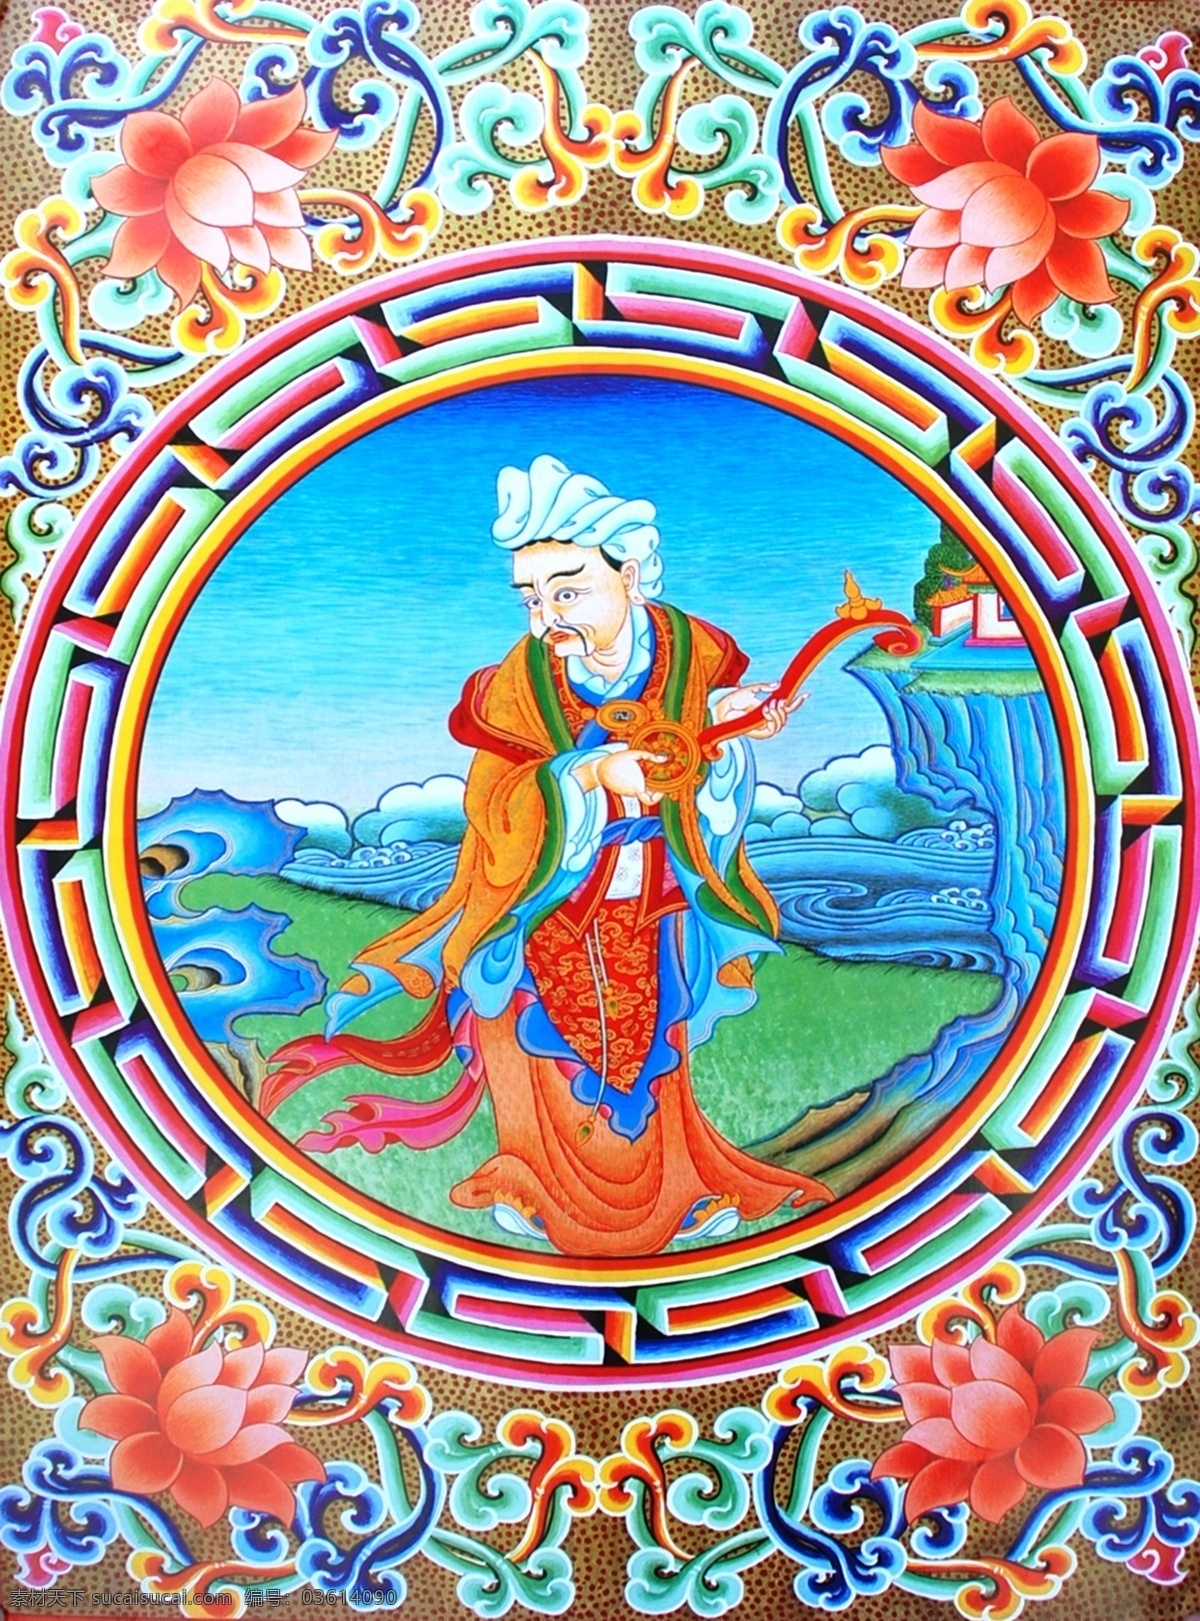 无框画 佛教 手绘 墙画 壁画 卧室画 绘画 吉祥 图案 藏族 宗教 和平 平安 宗教设计 藏族传统图案 人 绘画书法 文化艺术